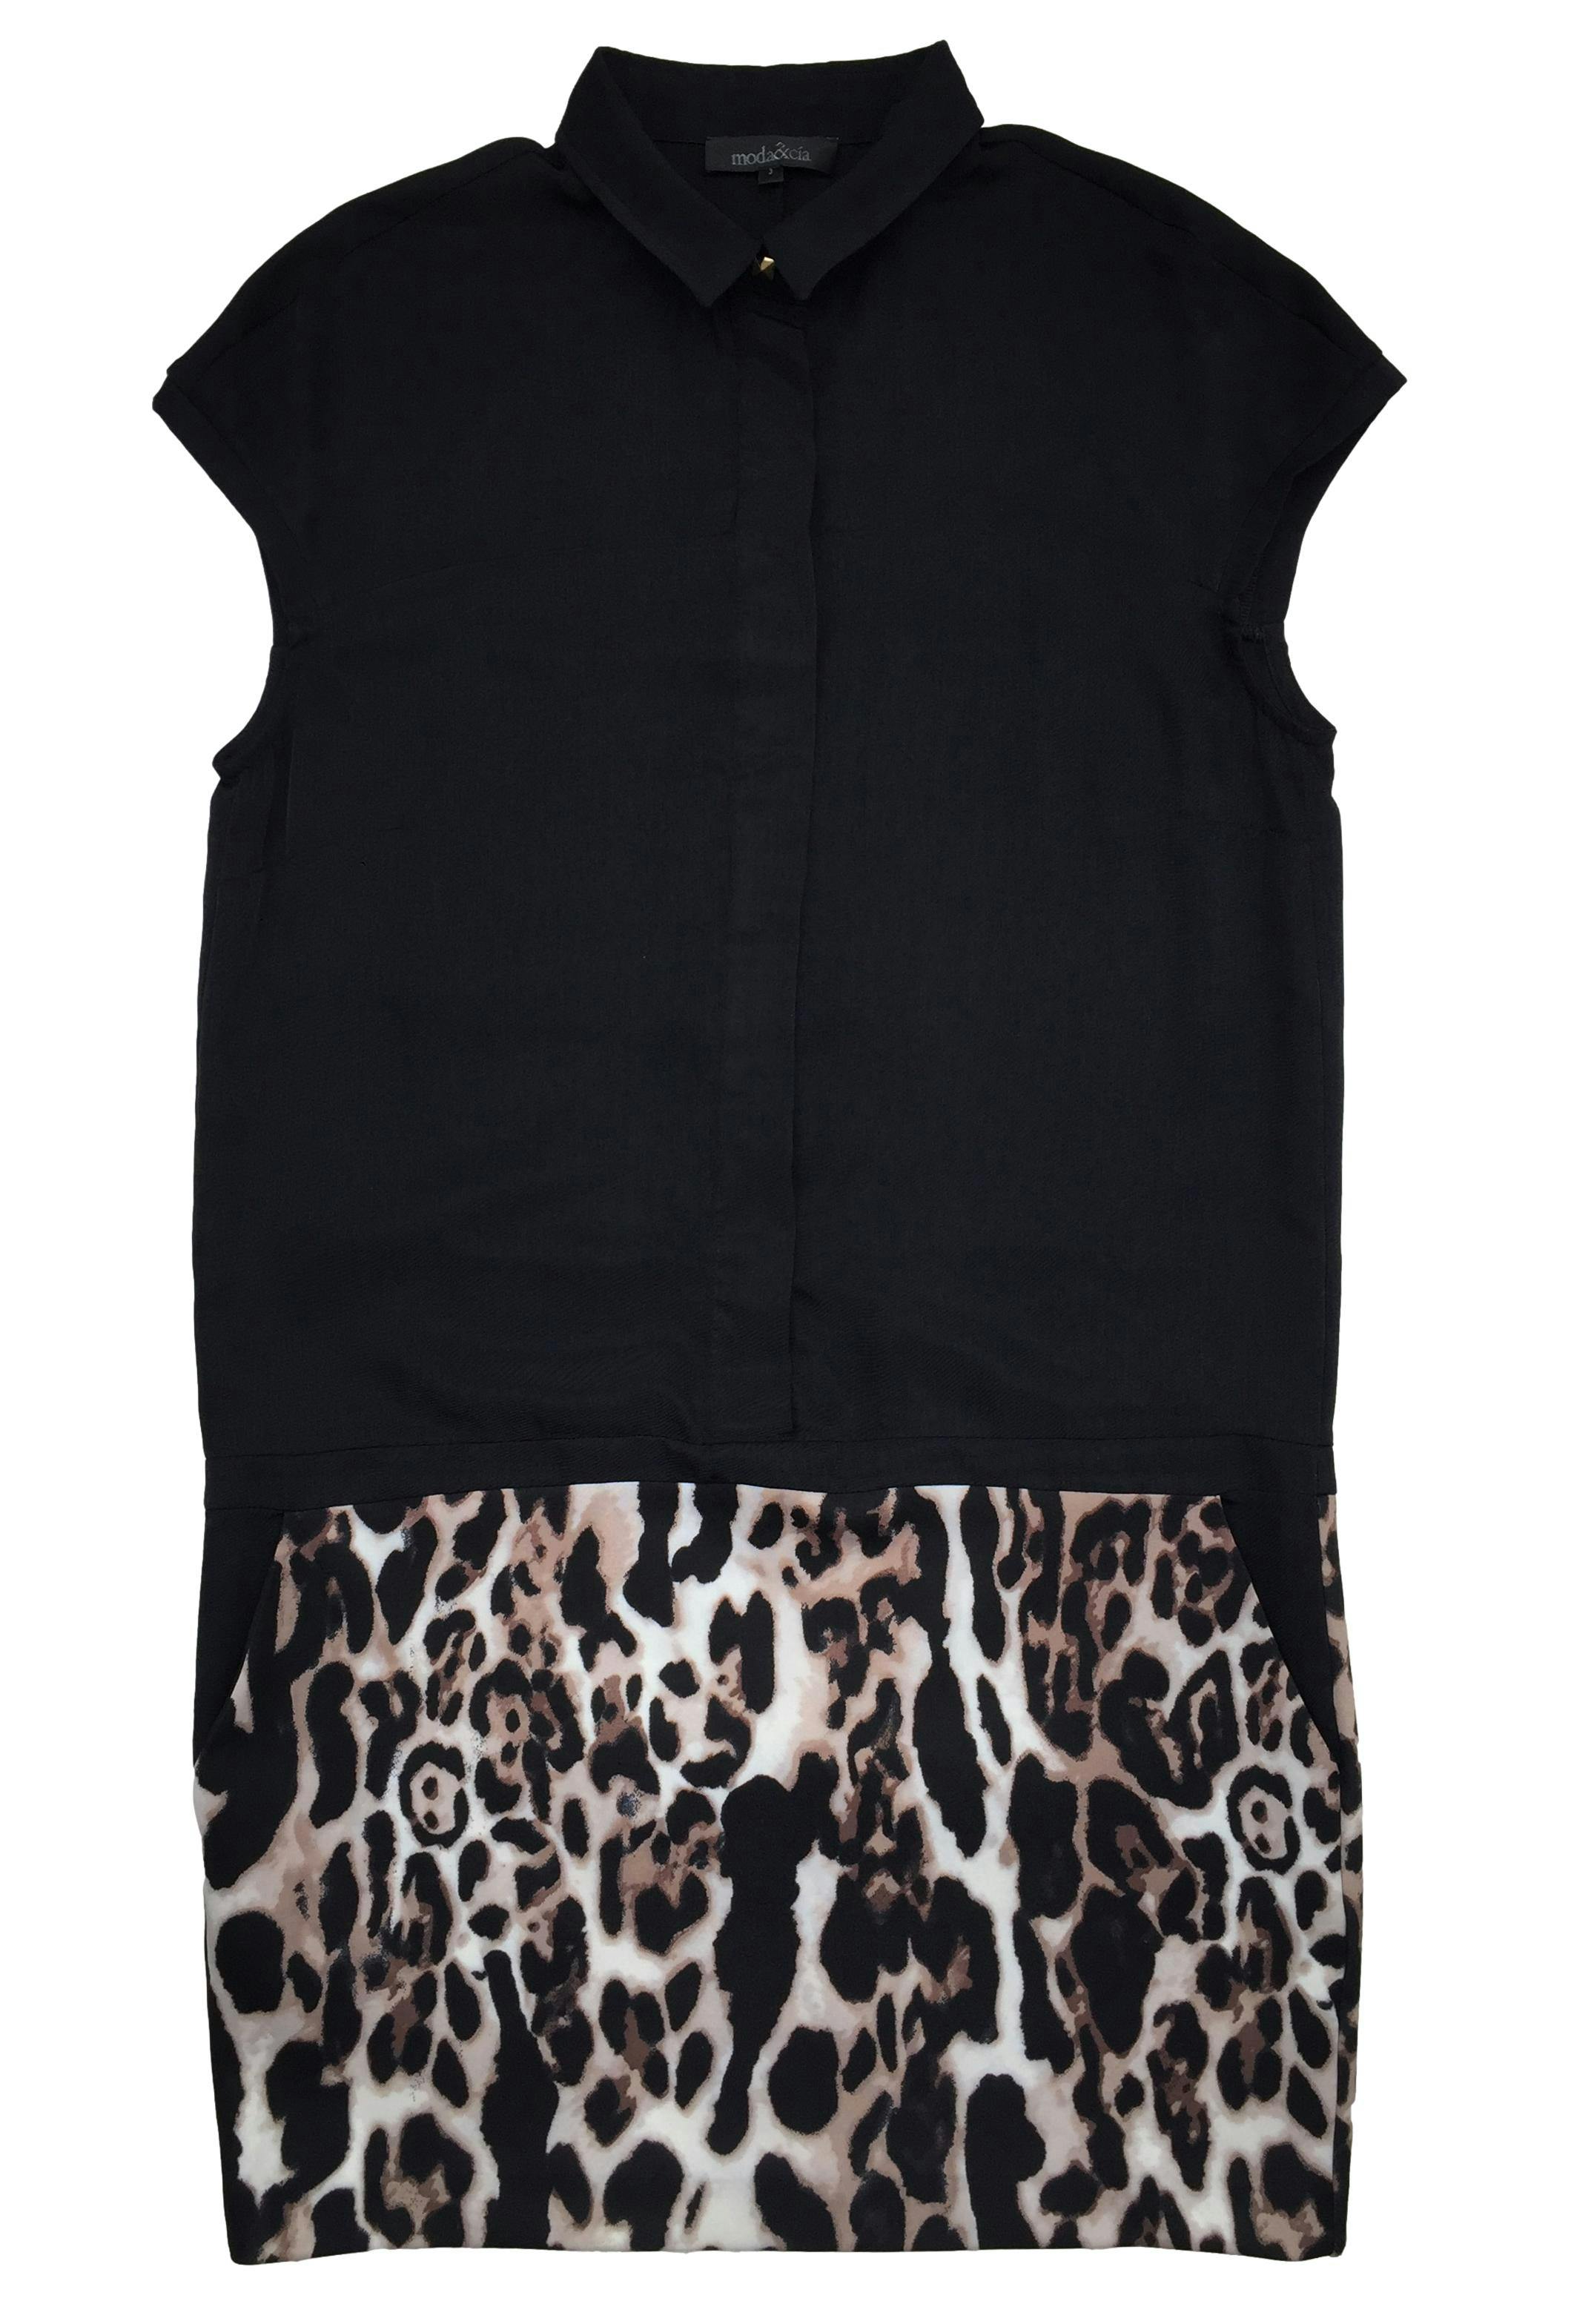 Vestido Moda & cia negro de cuello camisero, falda en animal print, con botones delanteros invisibles. Busto 100cm, Largo 92cm